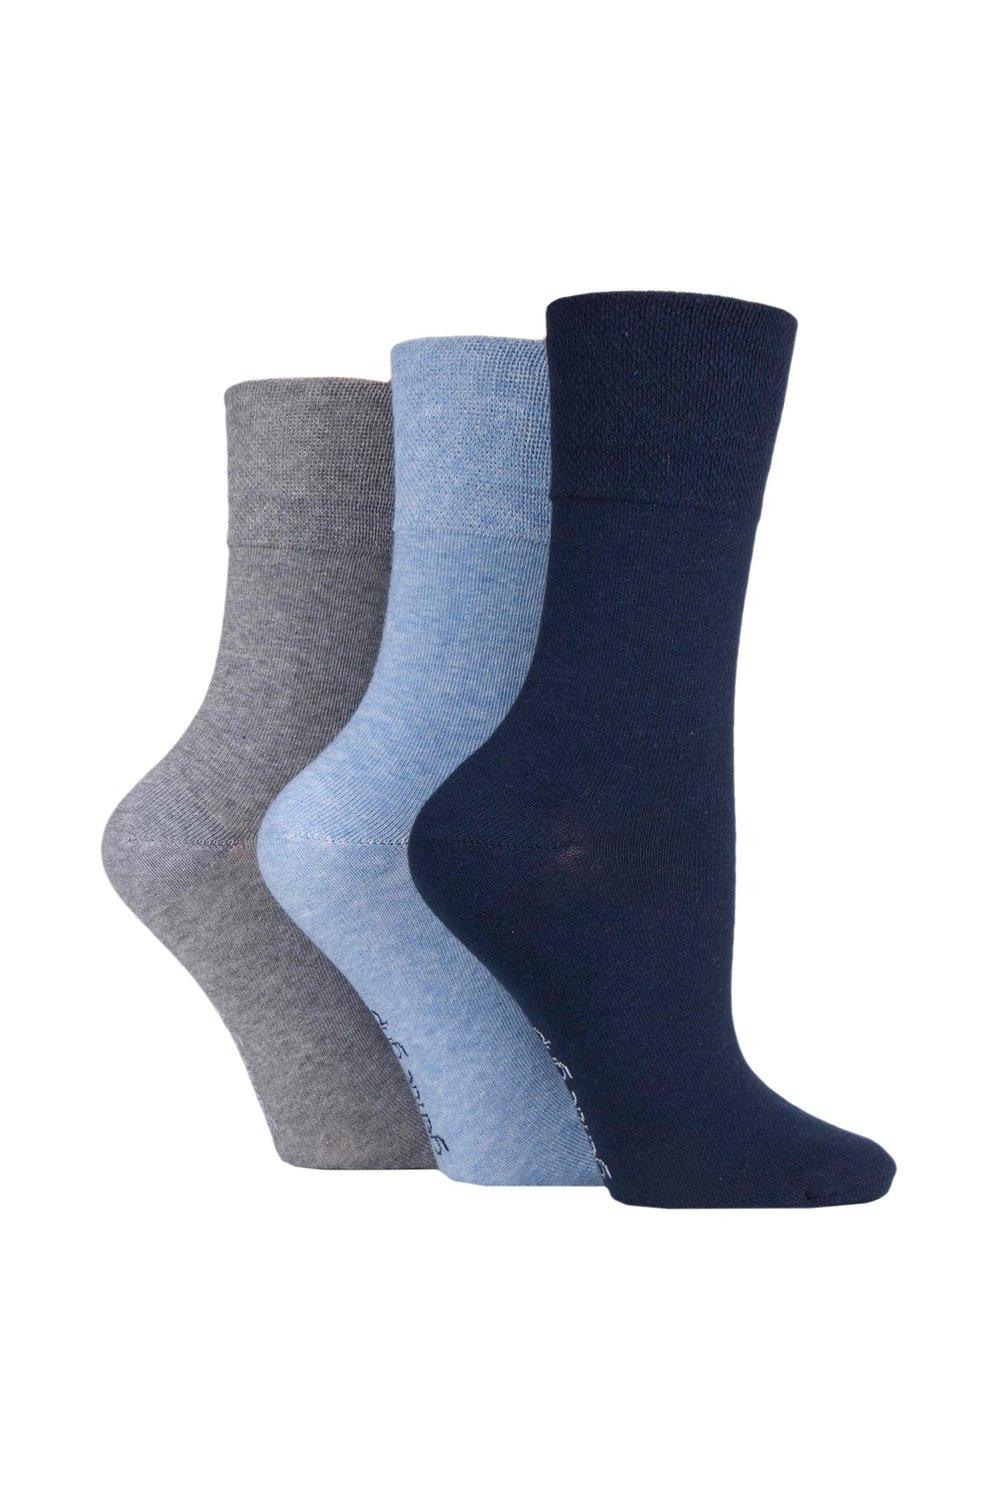 3 Pair Plain Cotton Socks